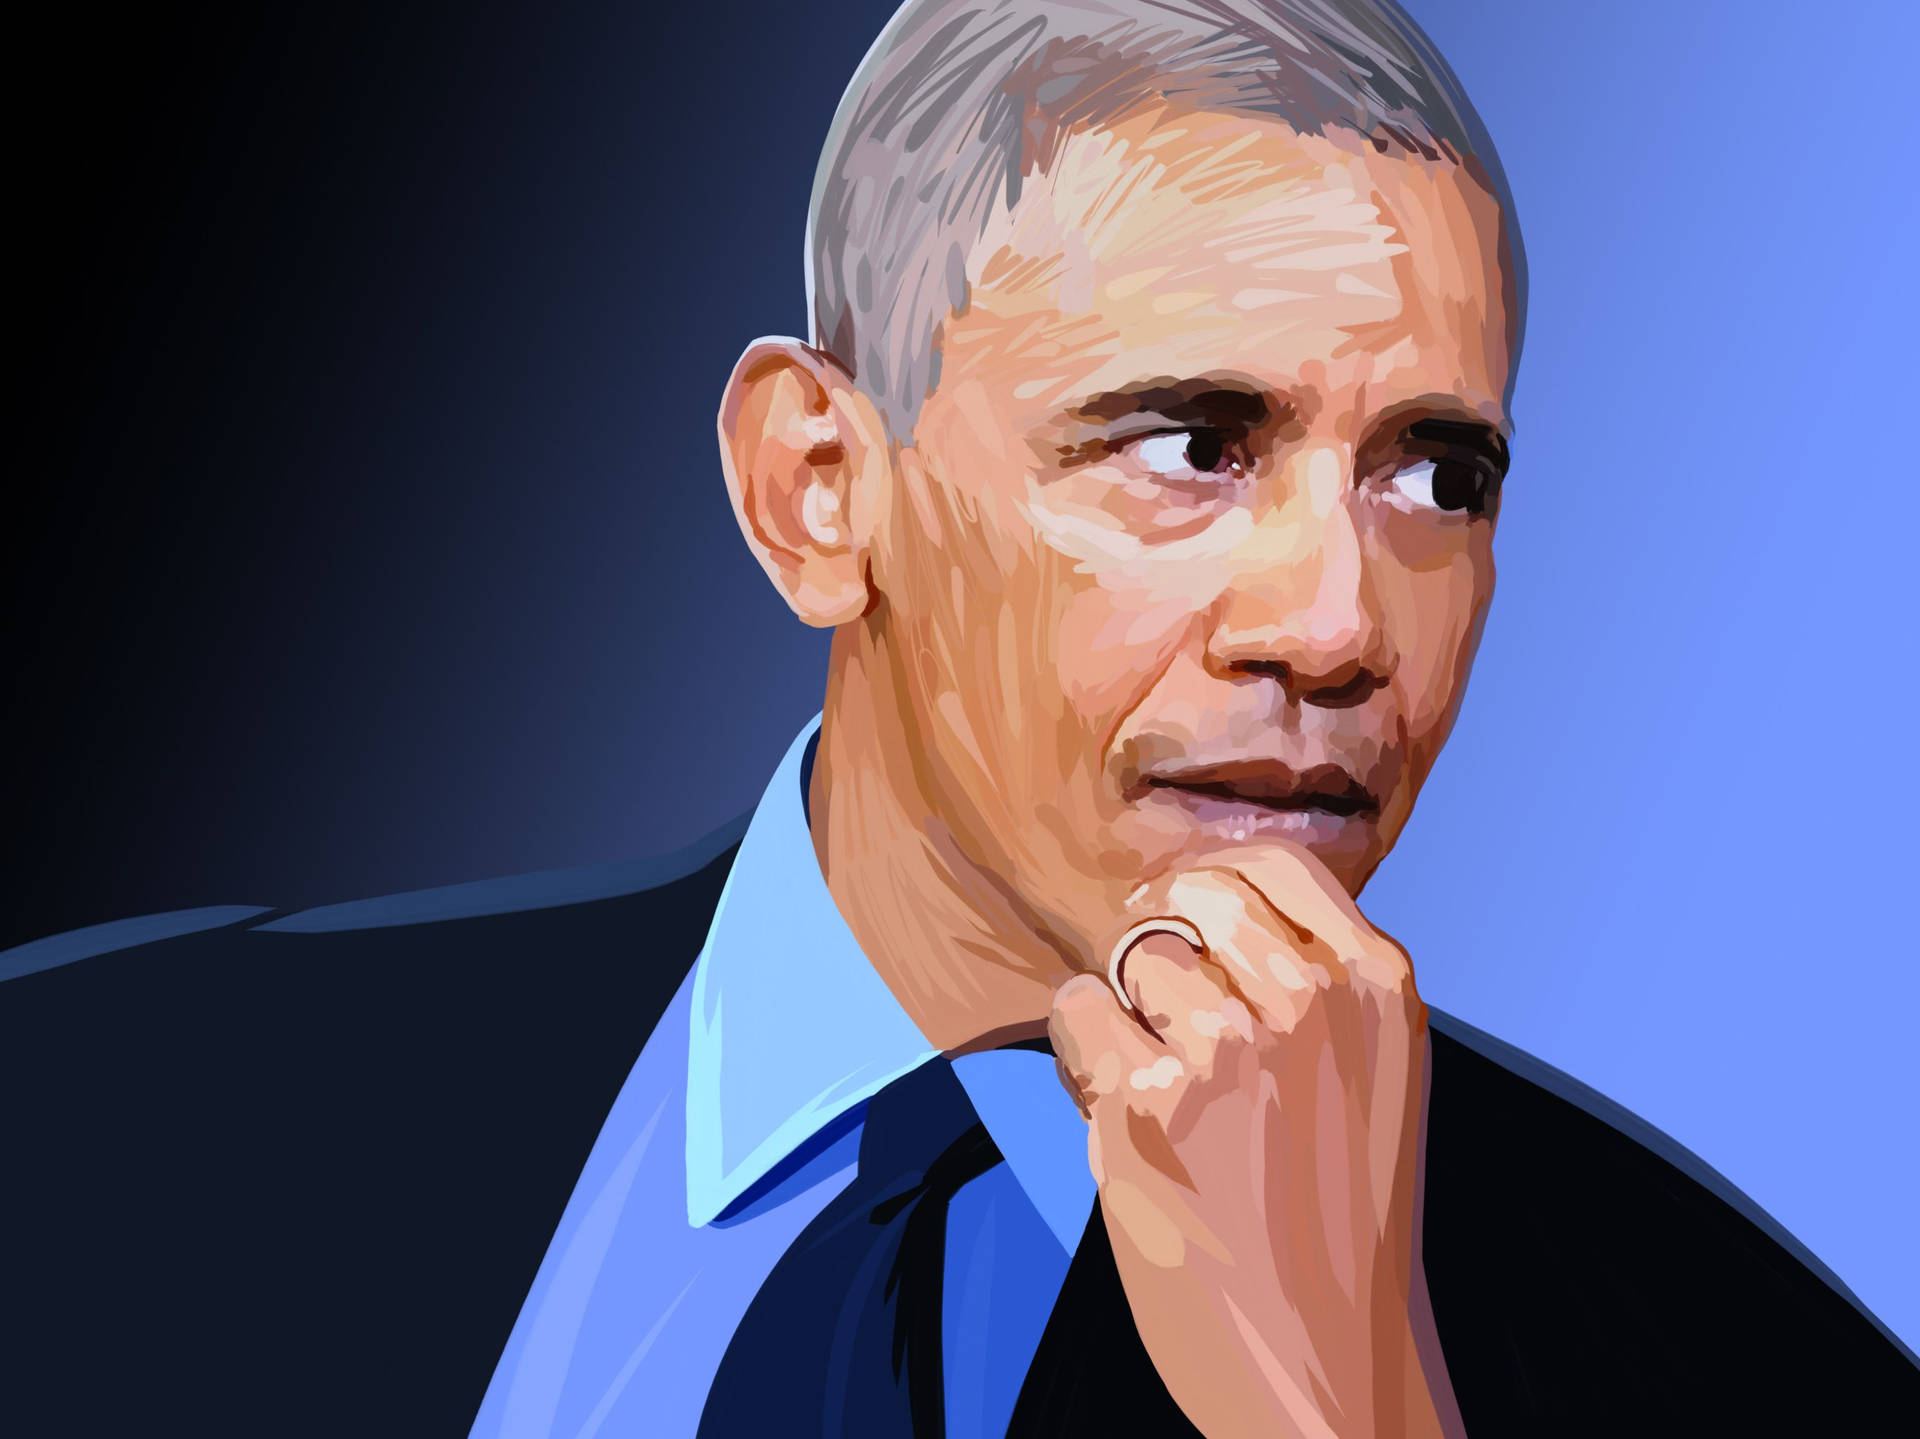 Barack Obama Graphic Illustration Background